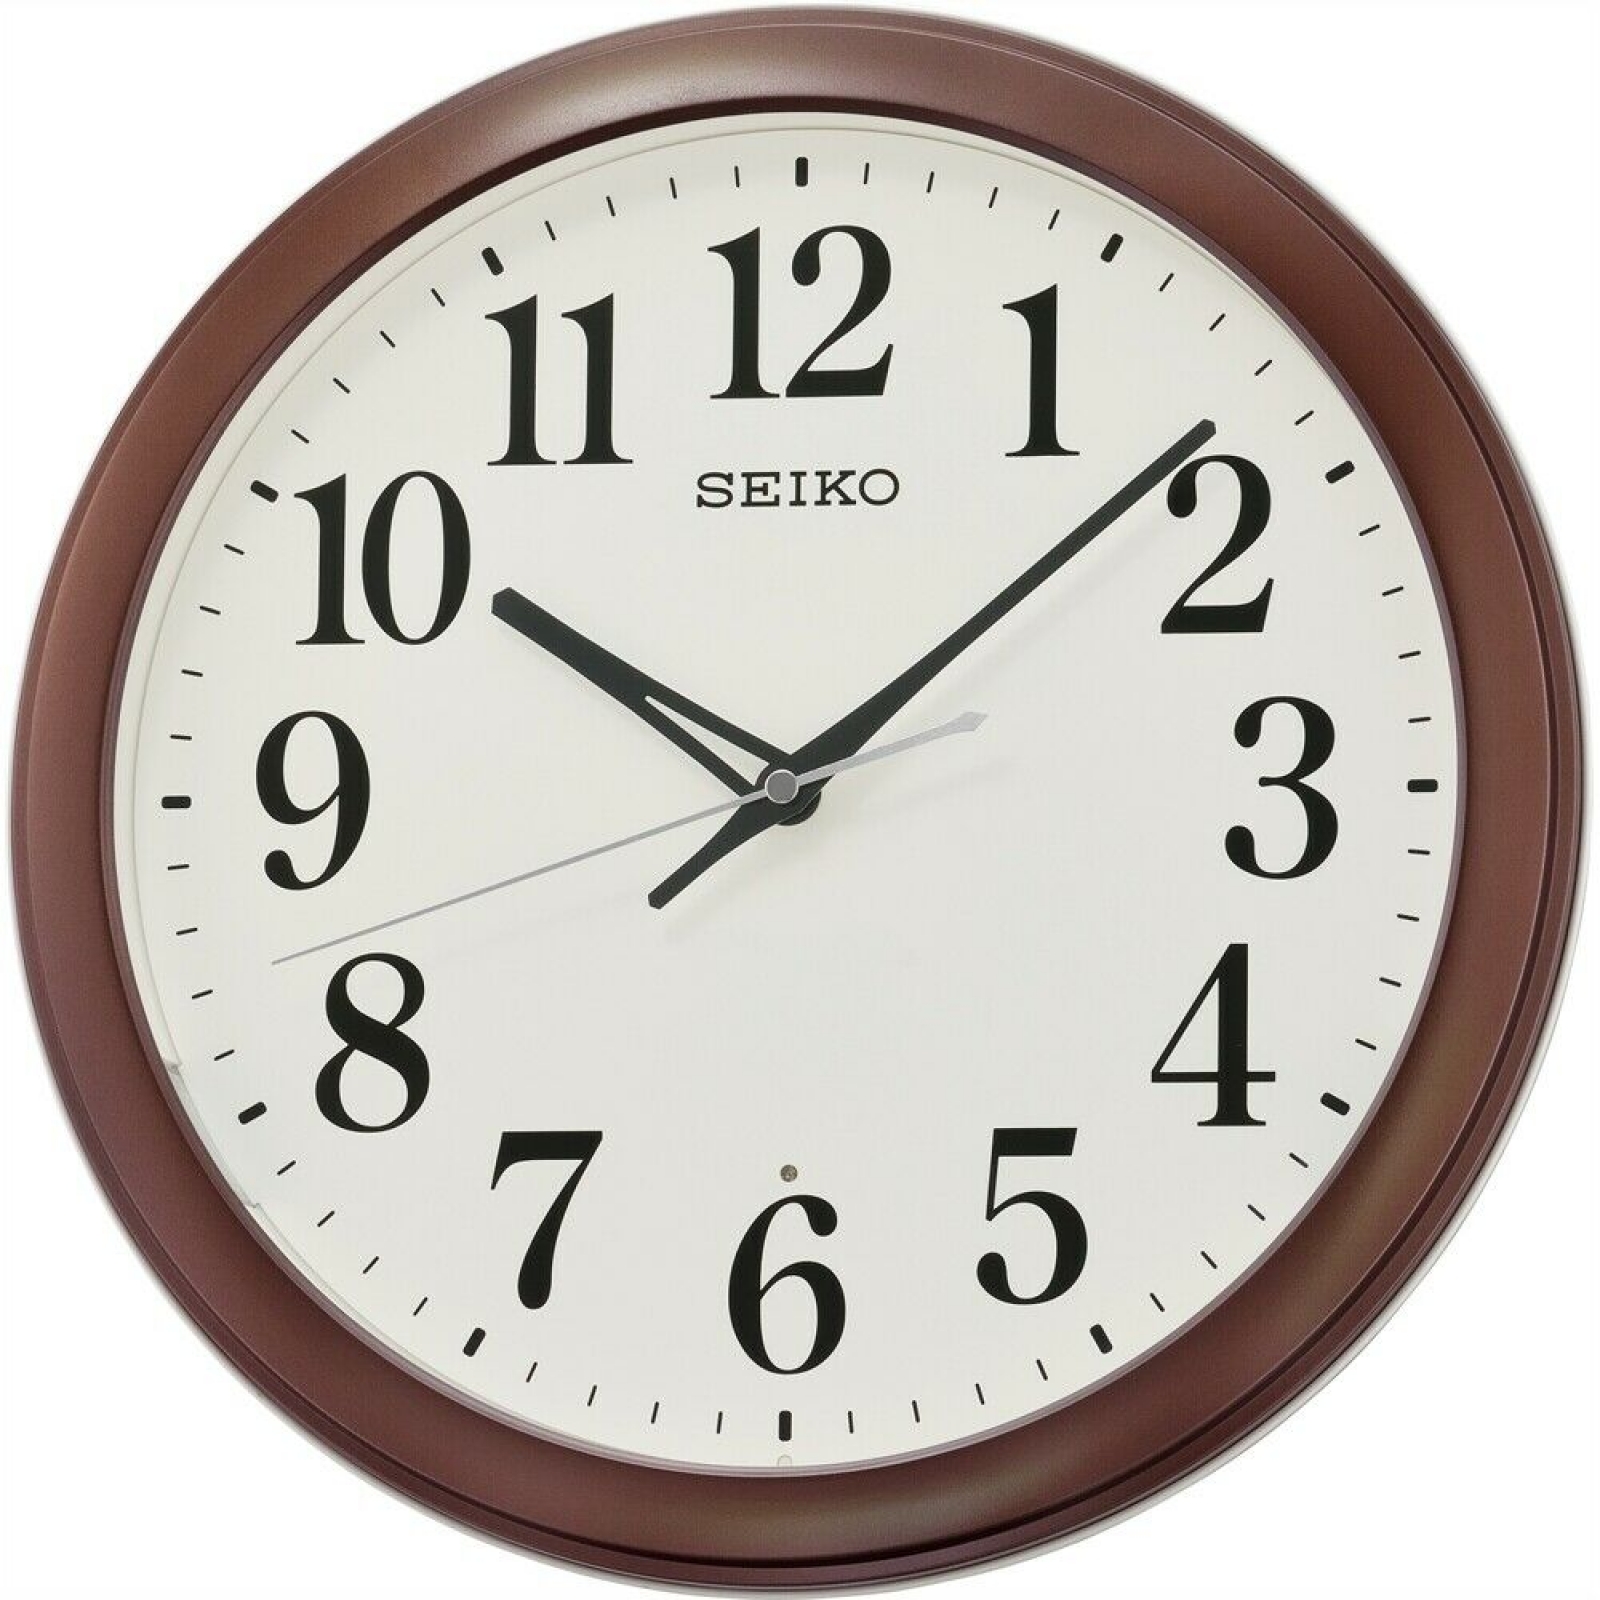 Производитель настенных часов. Rhythm cmh726nr06. Настенные часы Seiko qxa528bn. Настенные часы Seiko qxa525kn. Настенные часы Seiko qxa155b.